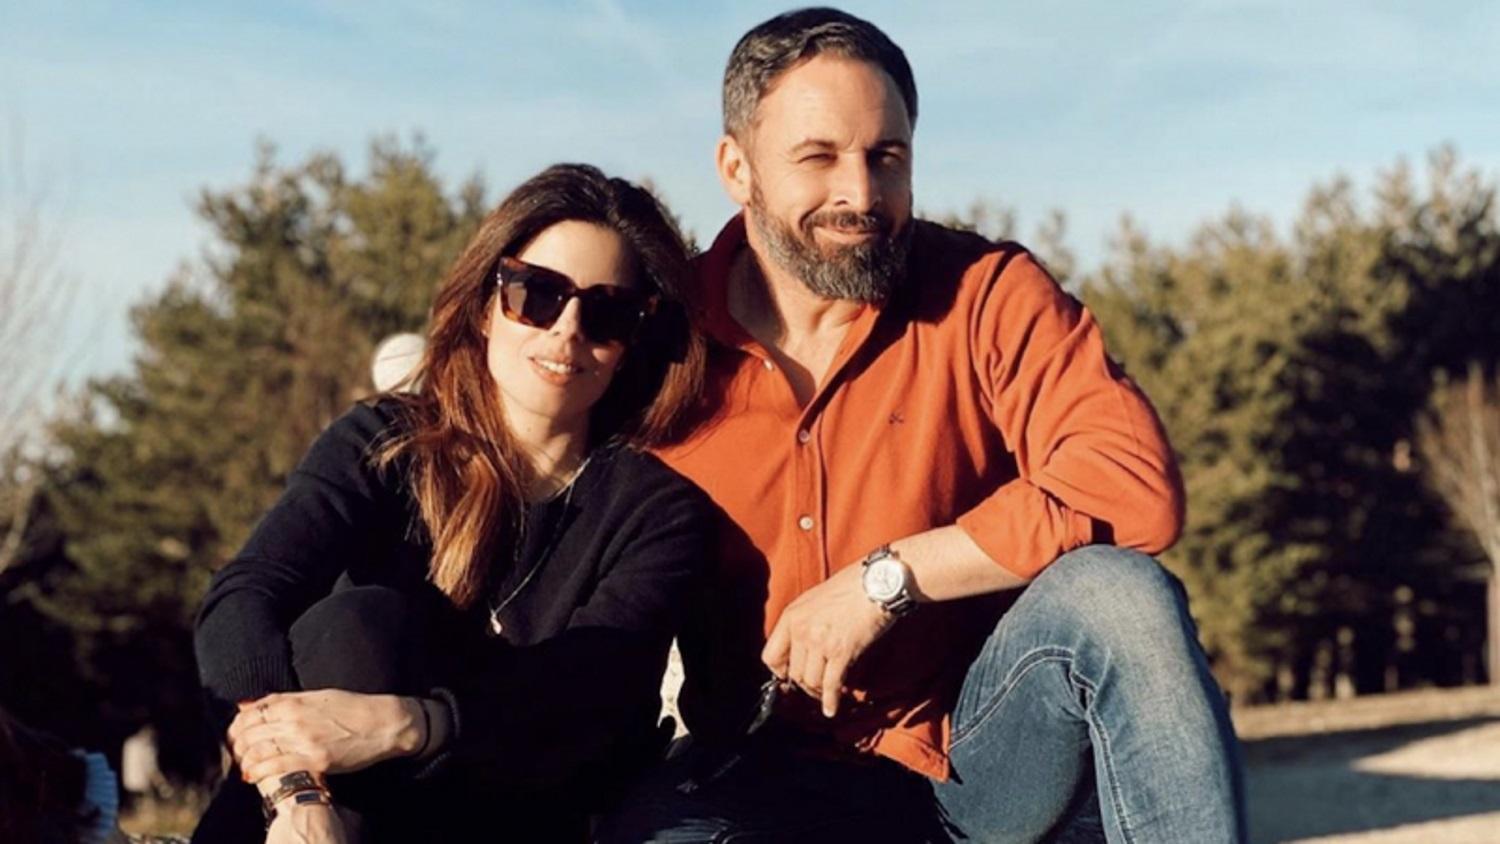 Santiago Abascal y Lidia Bedman disfrutan de una vida de lujo